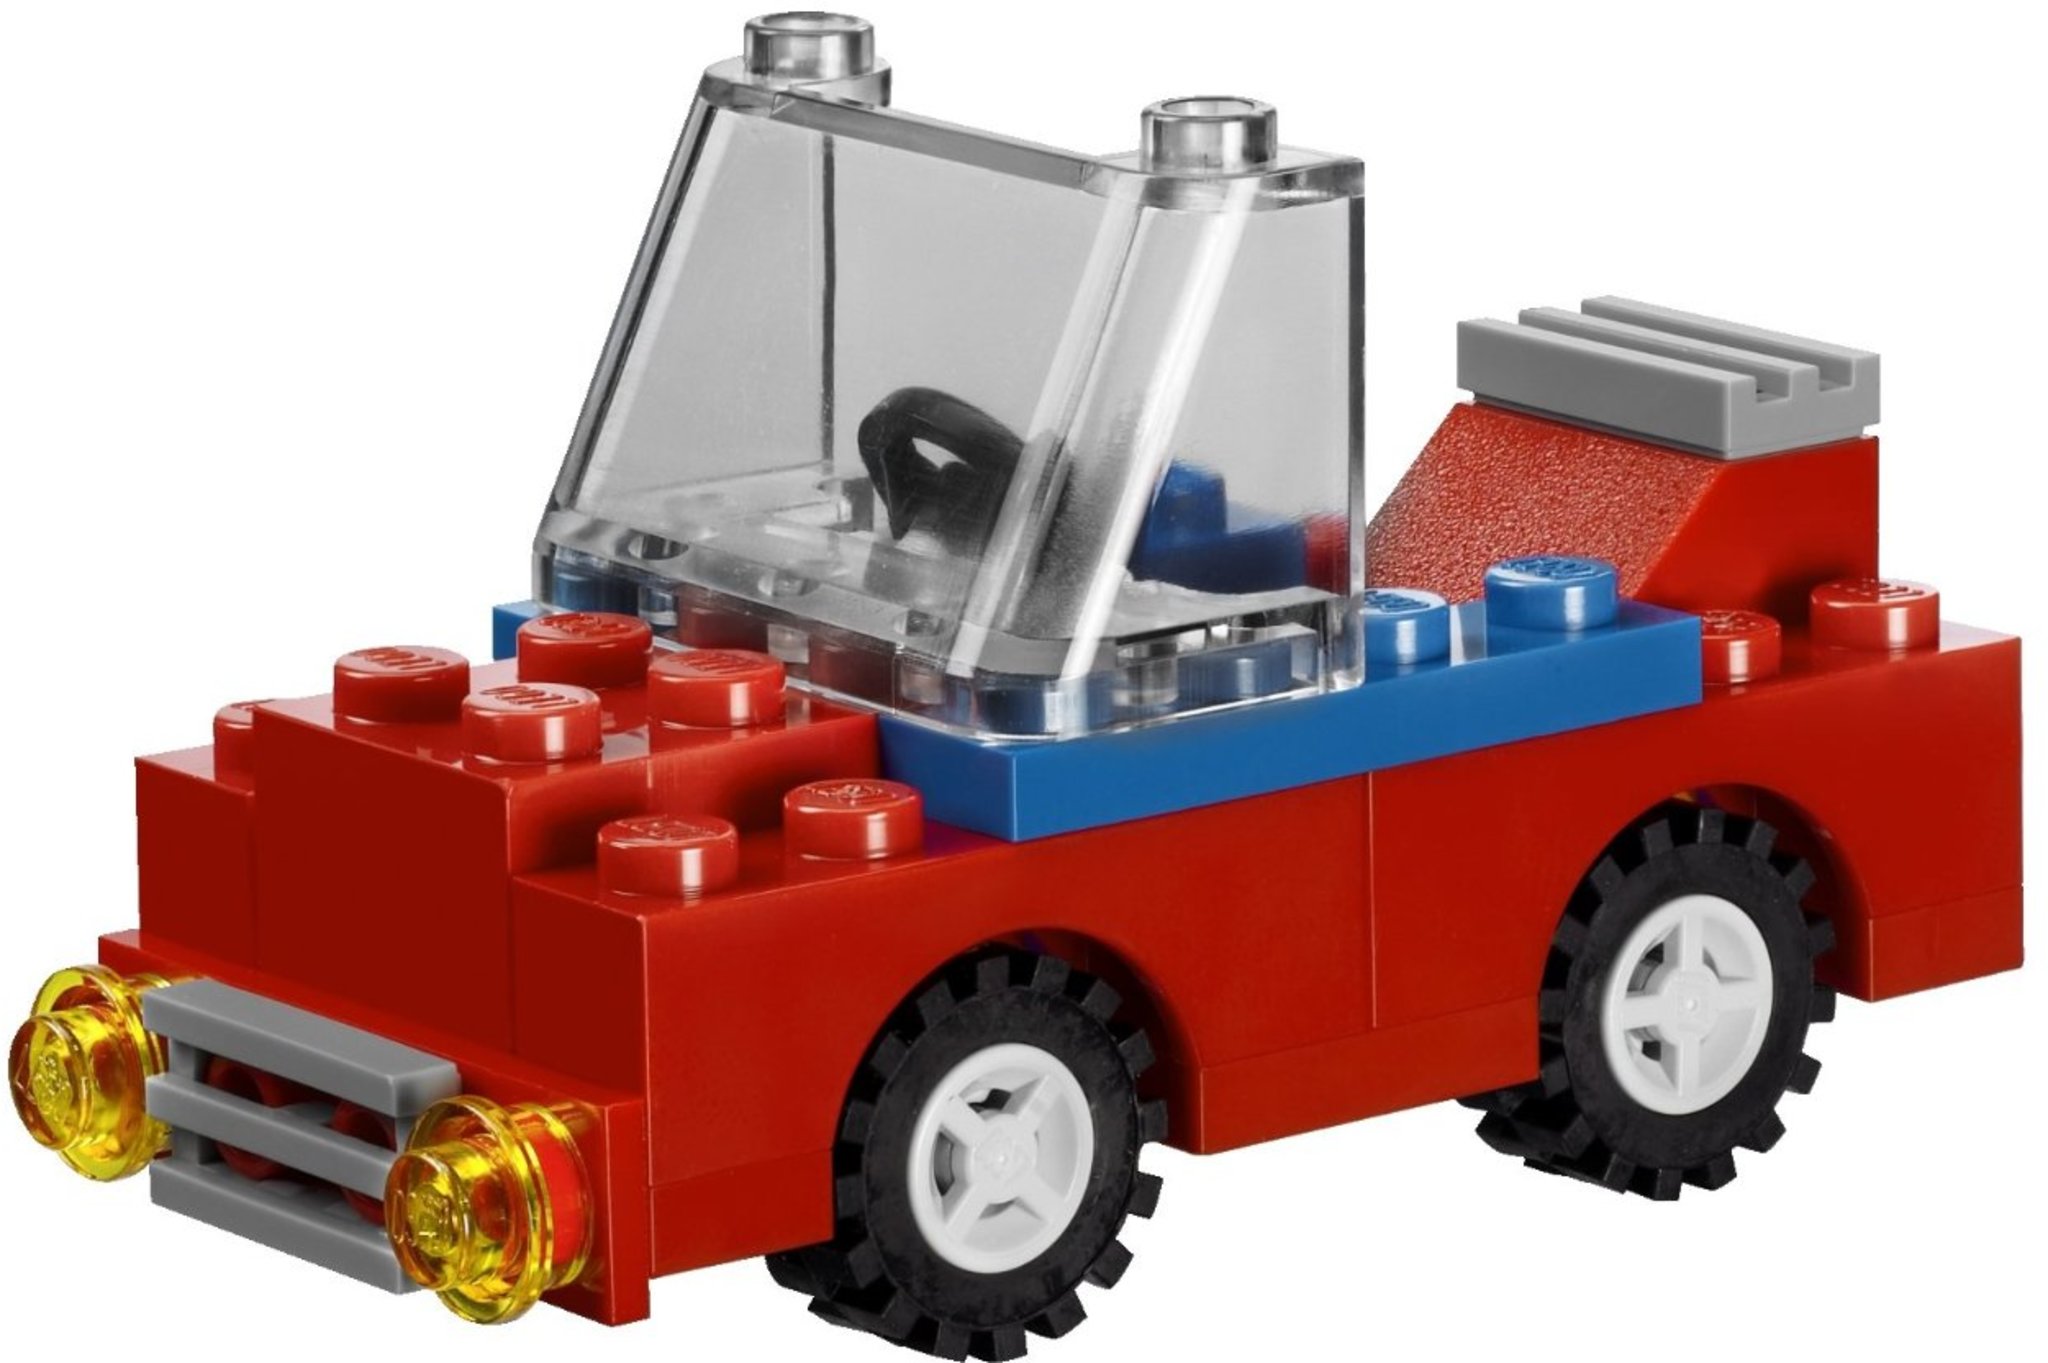 Responder escritura Me gusta LEGO Bricks And More 5508 - LEGO Deluxe Brick Box | Mattonito